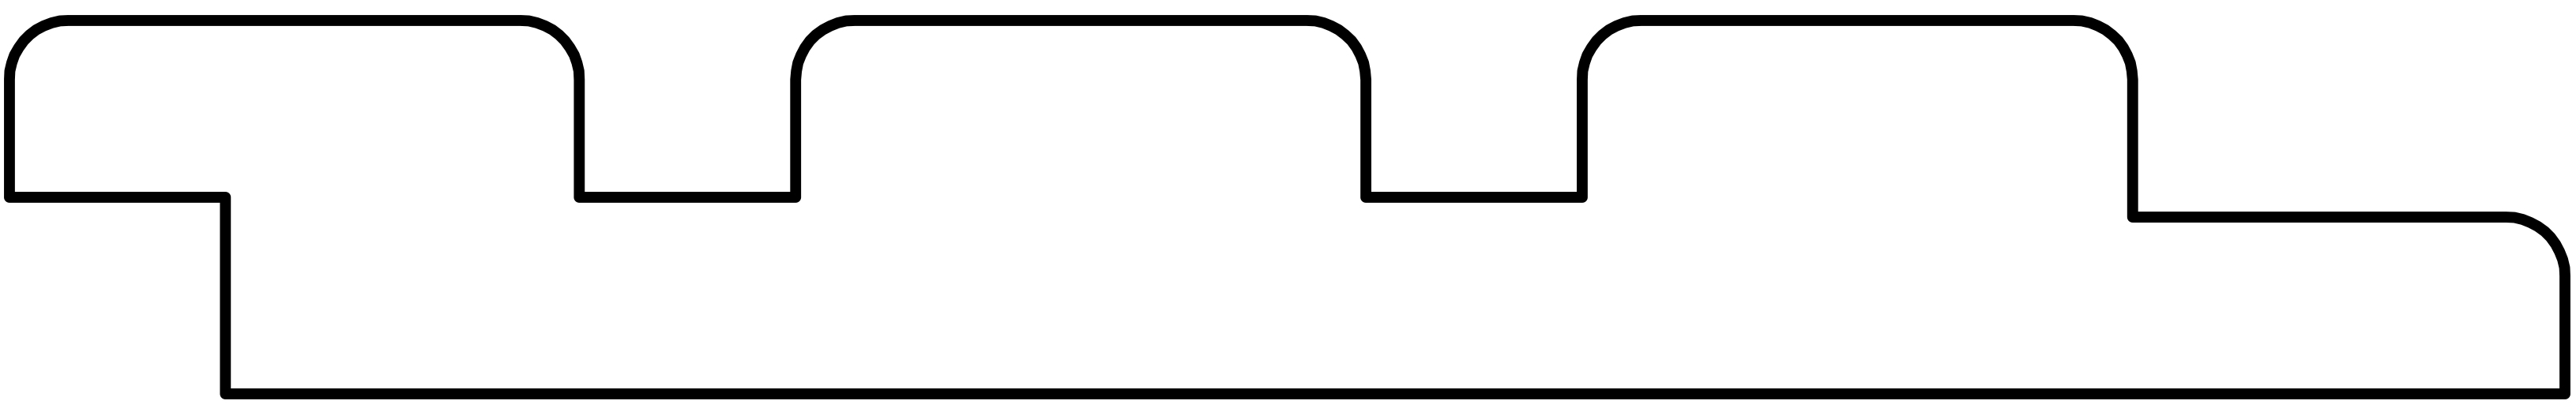 Dreifach Profil douglasie, schwarz imprägniert 1.9x13.0x245cm